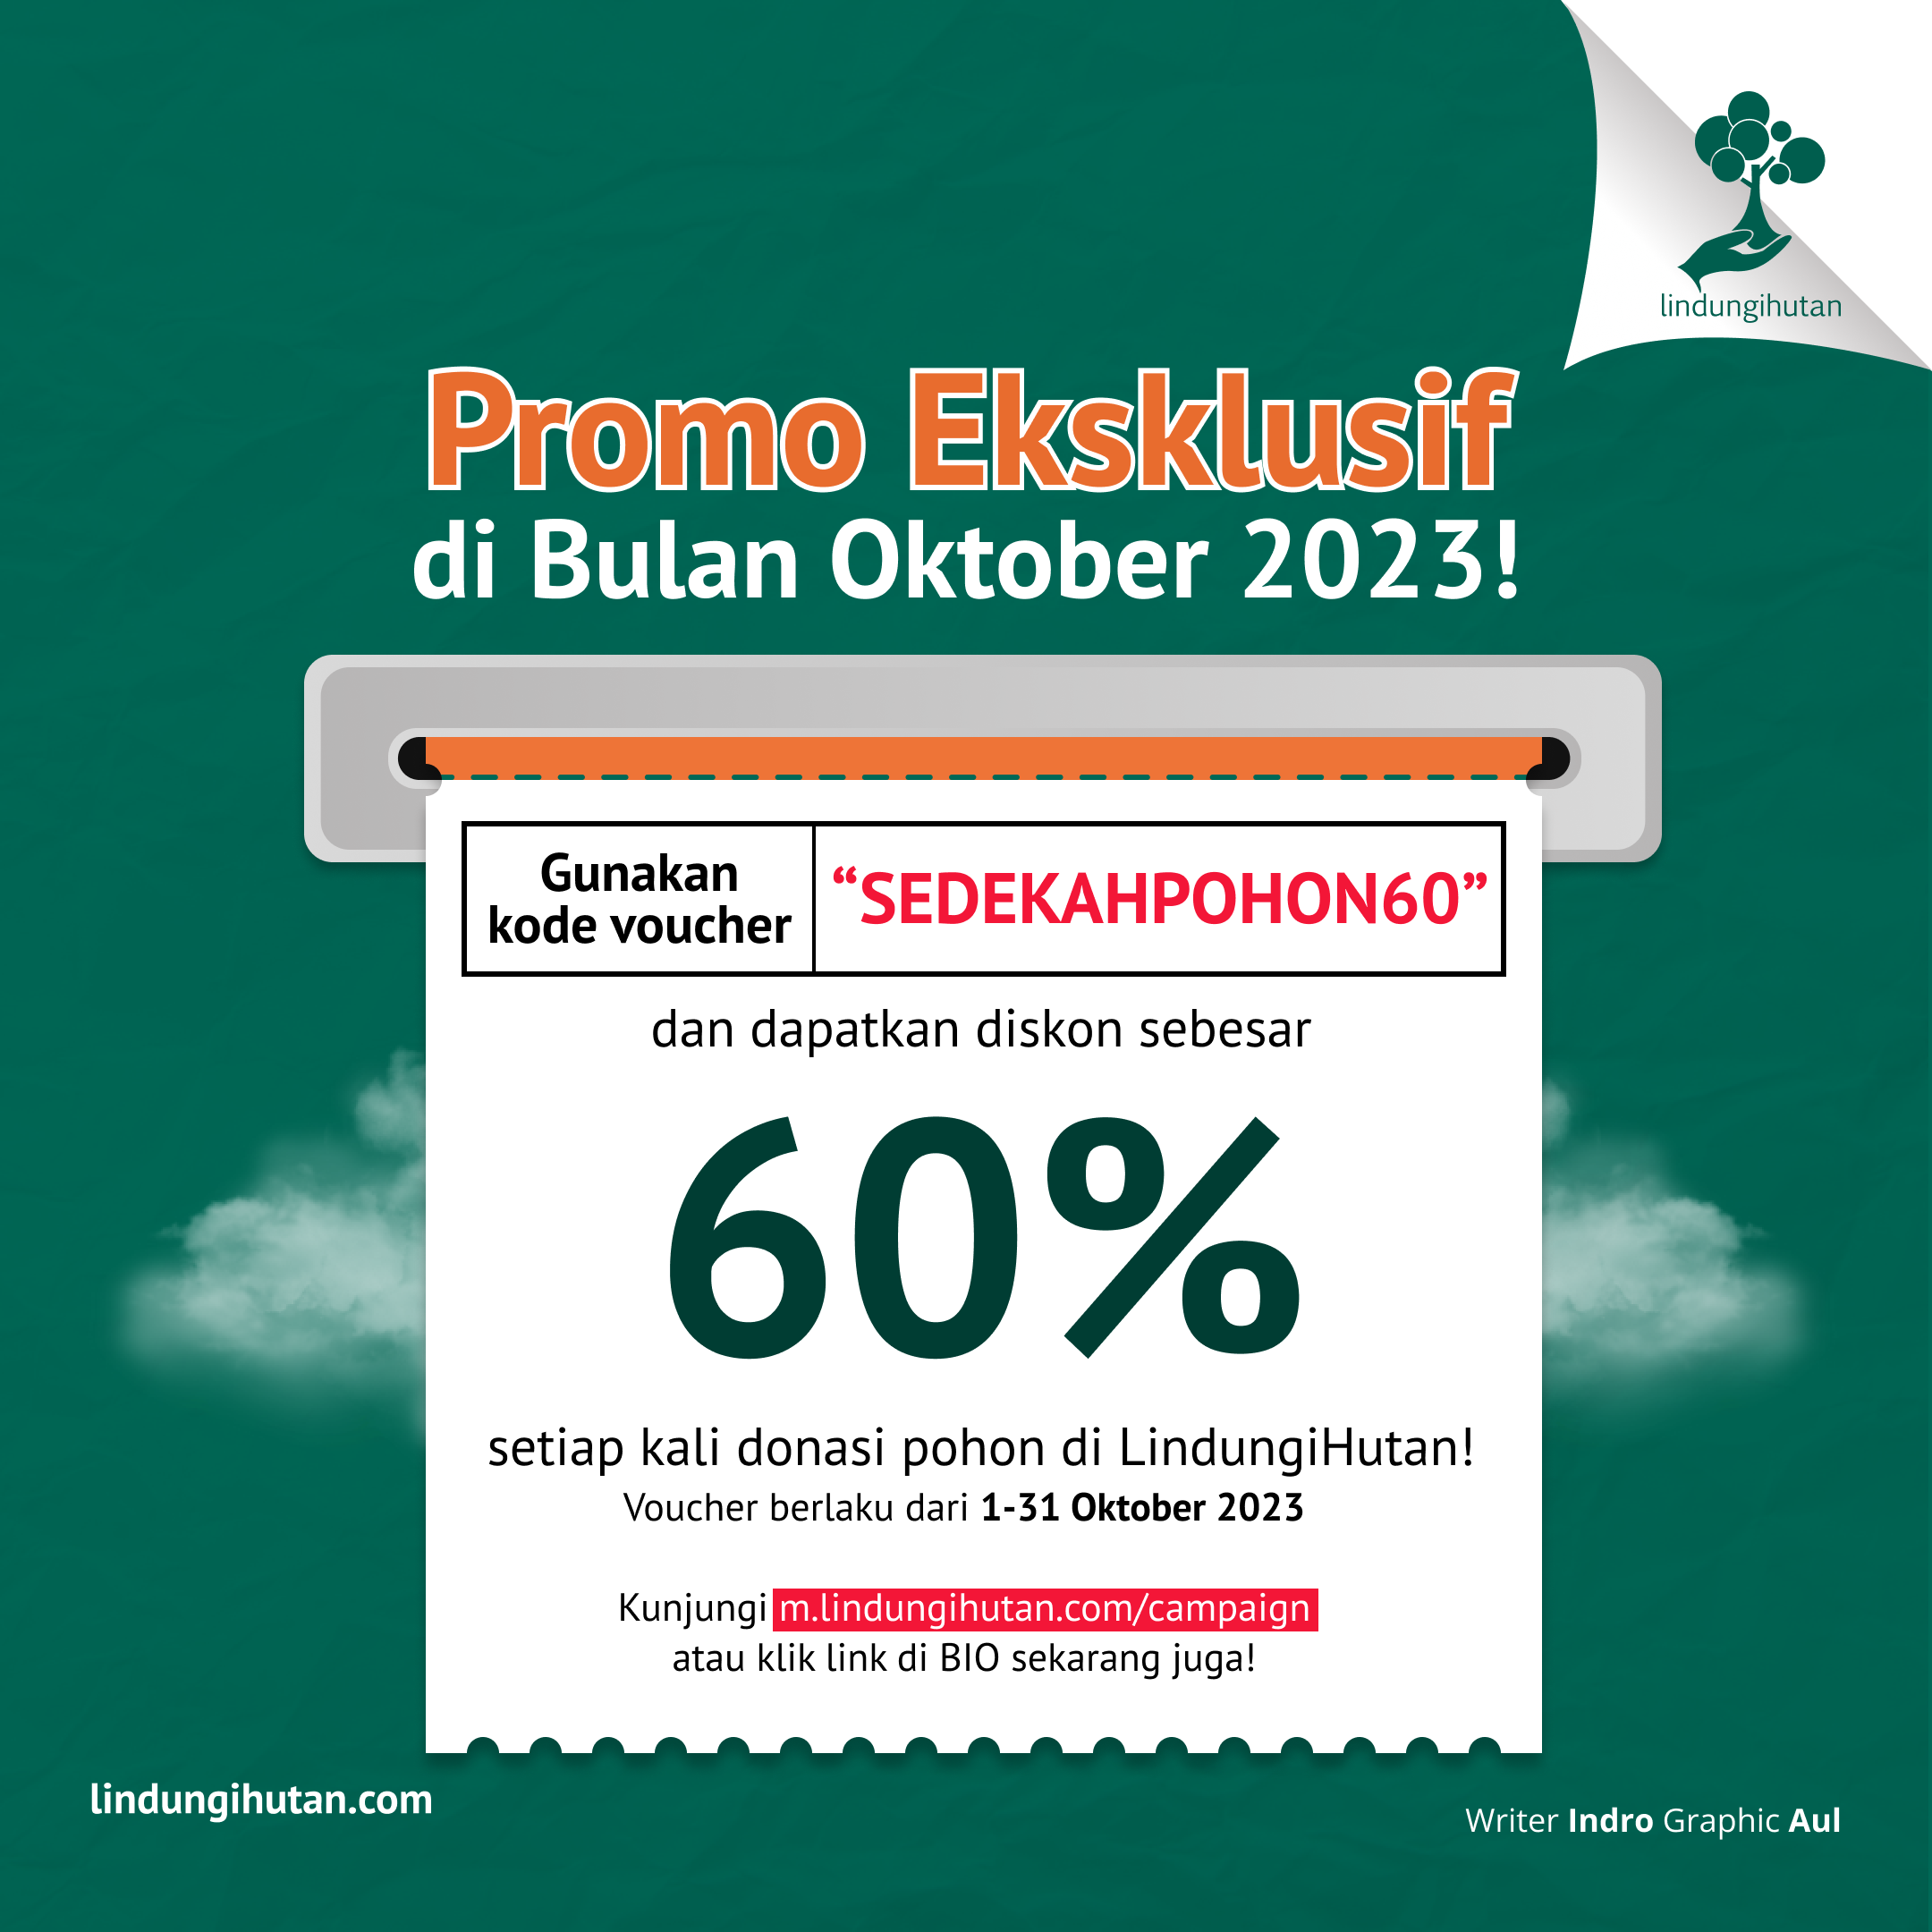 Kode promo subsidi 60% sedekah pohon di LindungiHutan khusus bulan Oktober 2023.